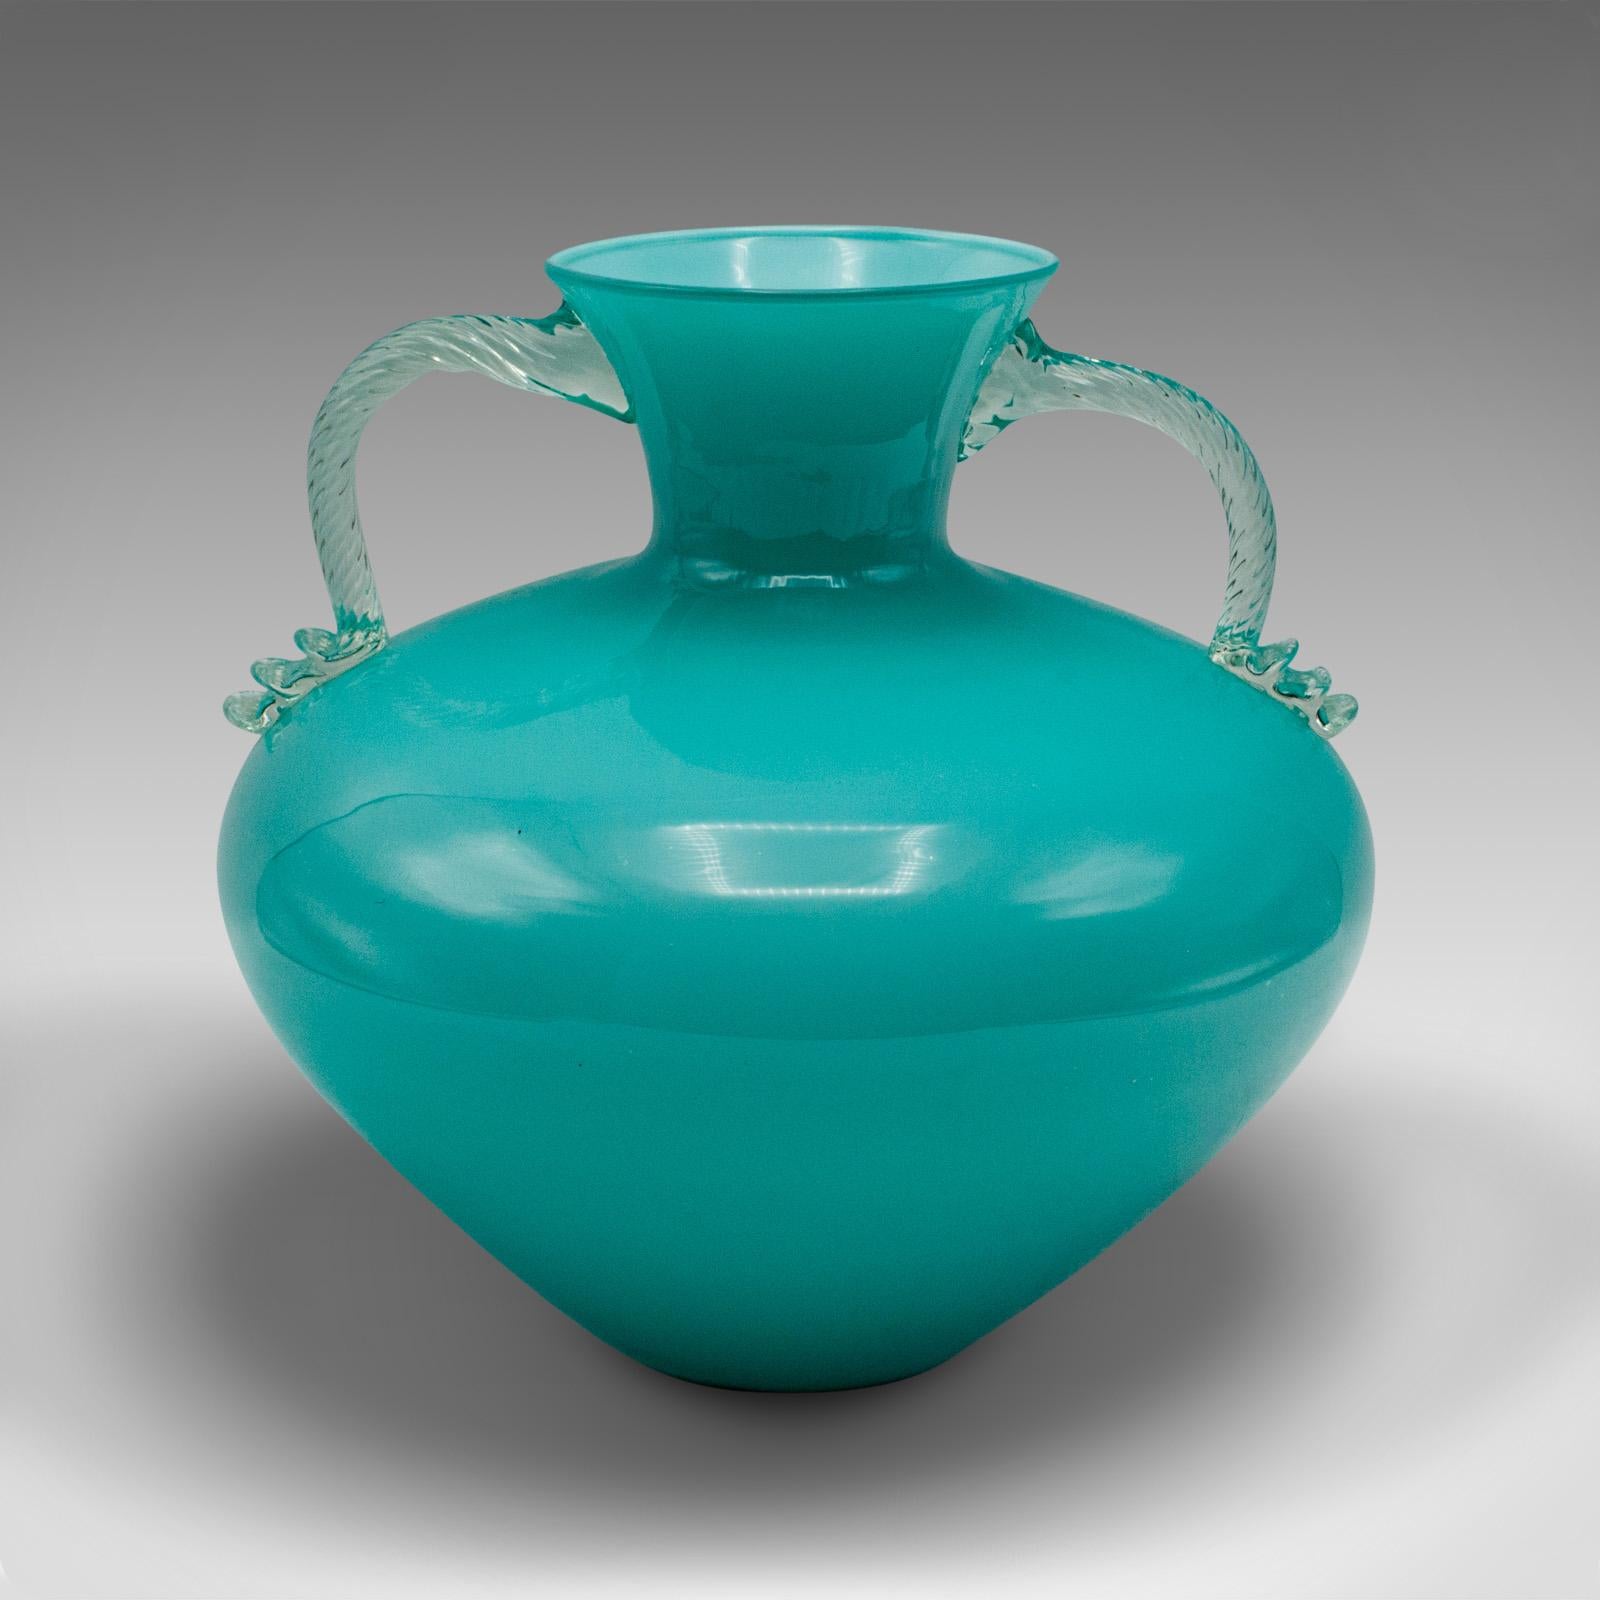 Il s'agit d'un vase vintage à deux anses de Murano. Un balustre décoratif italien en verre d'art, datant du milieu du 20e siècle, vers 1960.

Une couleur frappante avec une proportion délicieuse et un attrait esthétique
Présente une patine d'usage